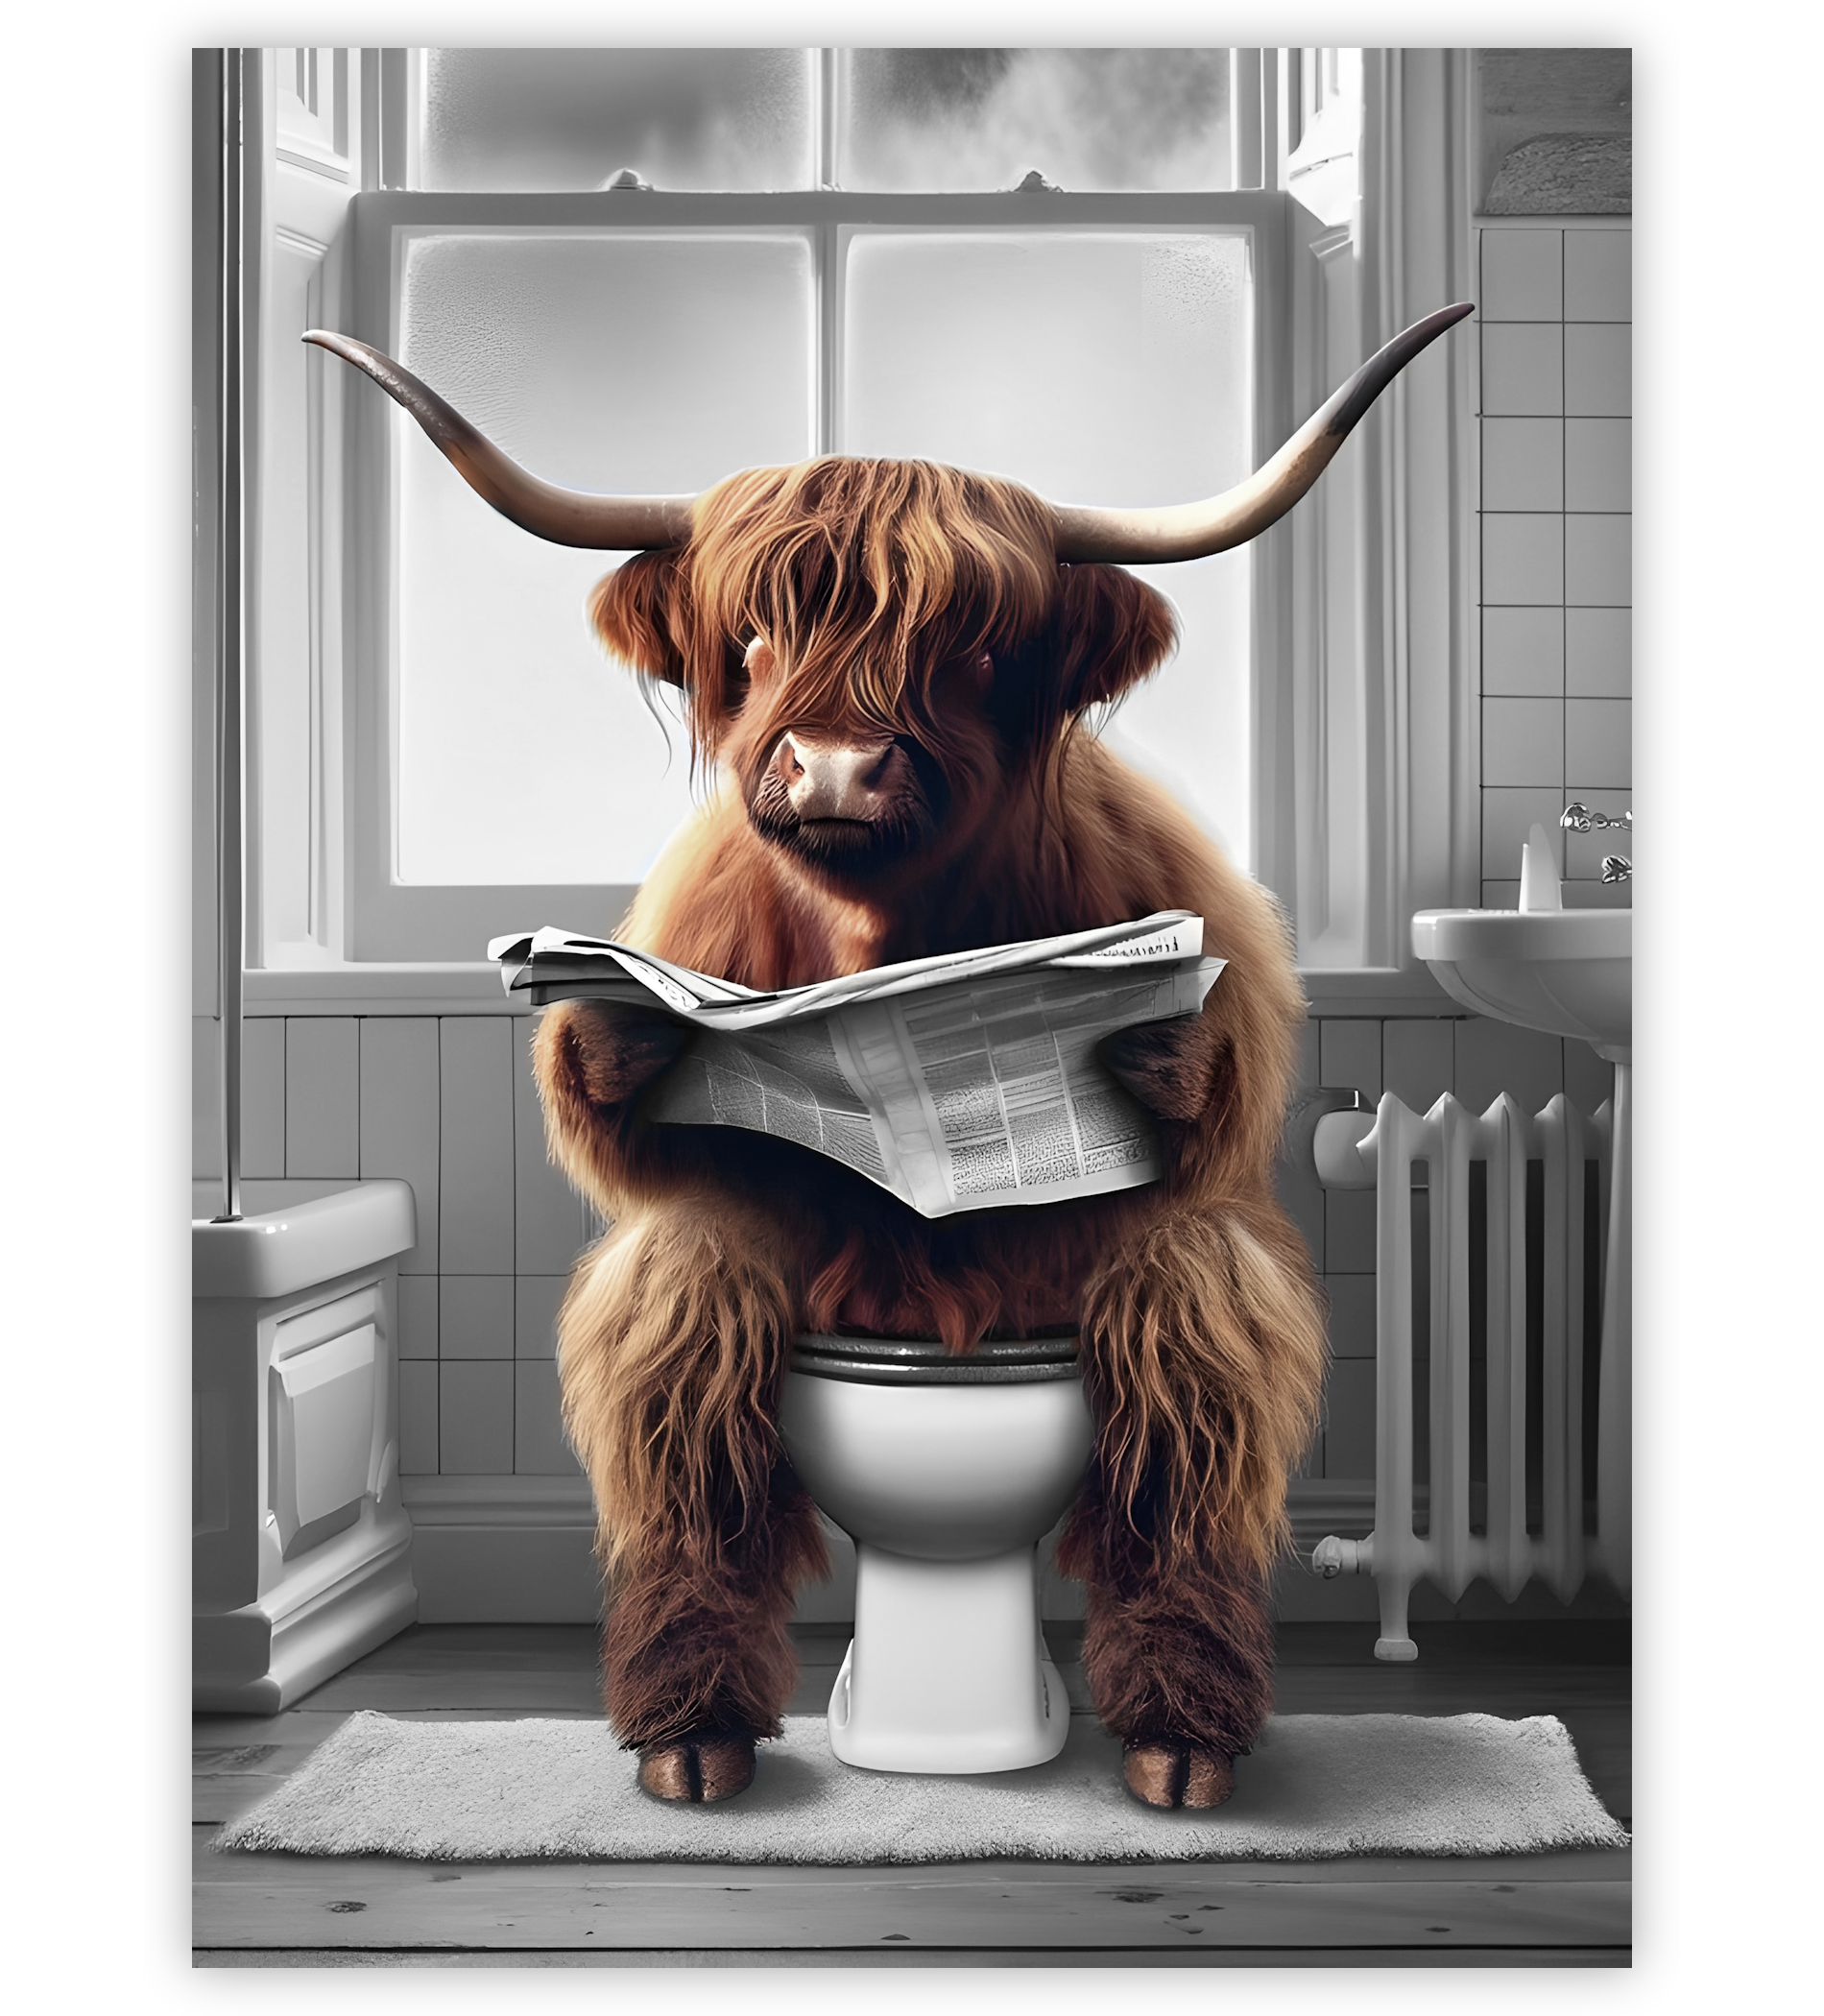 Poster, Wandbild von Hochland Kuh auf Toilette